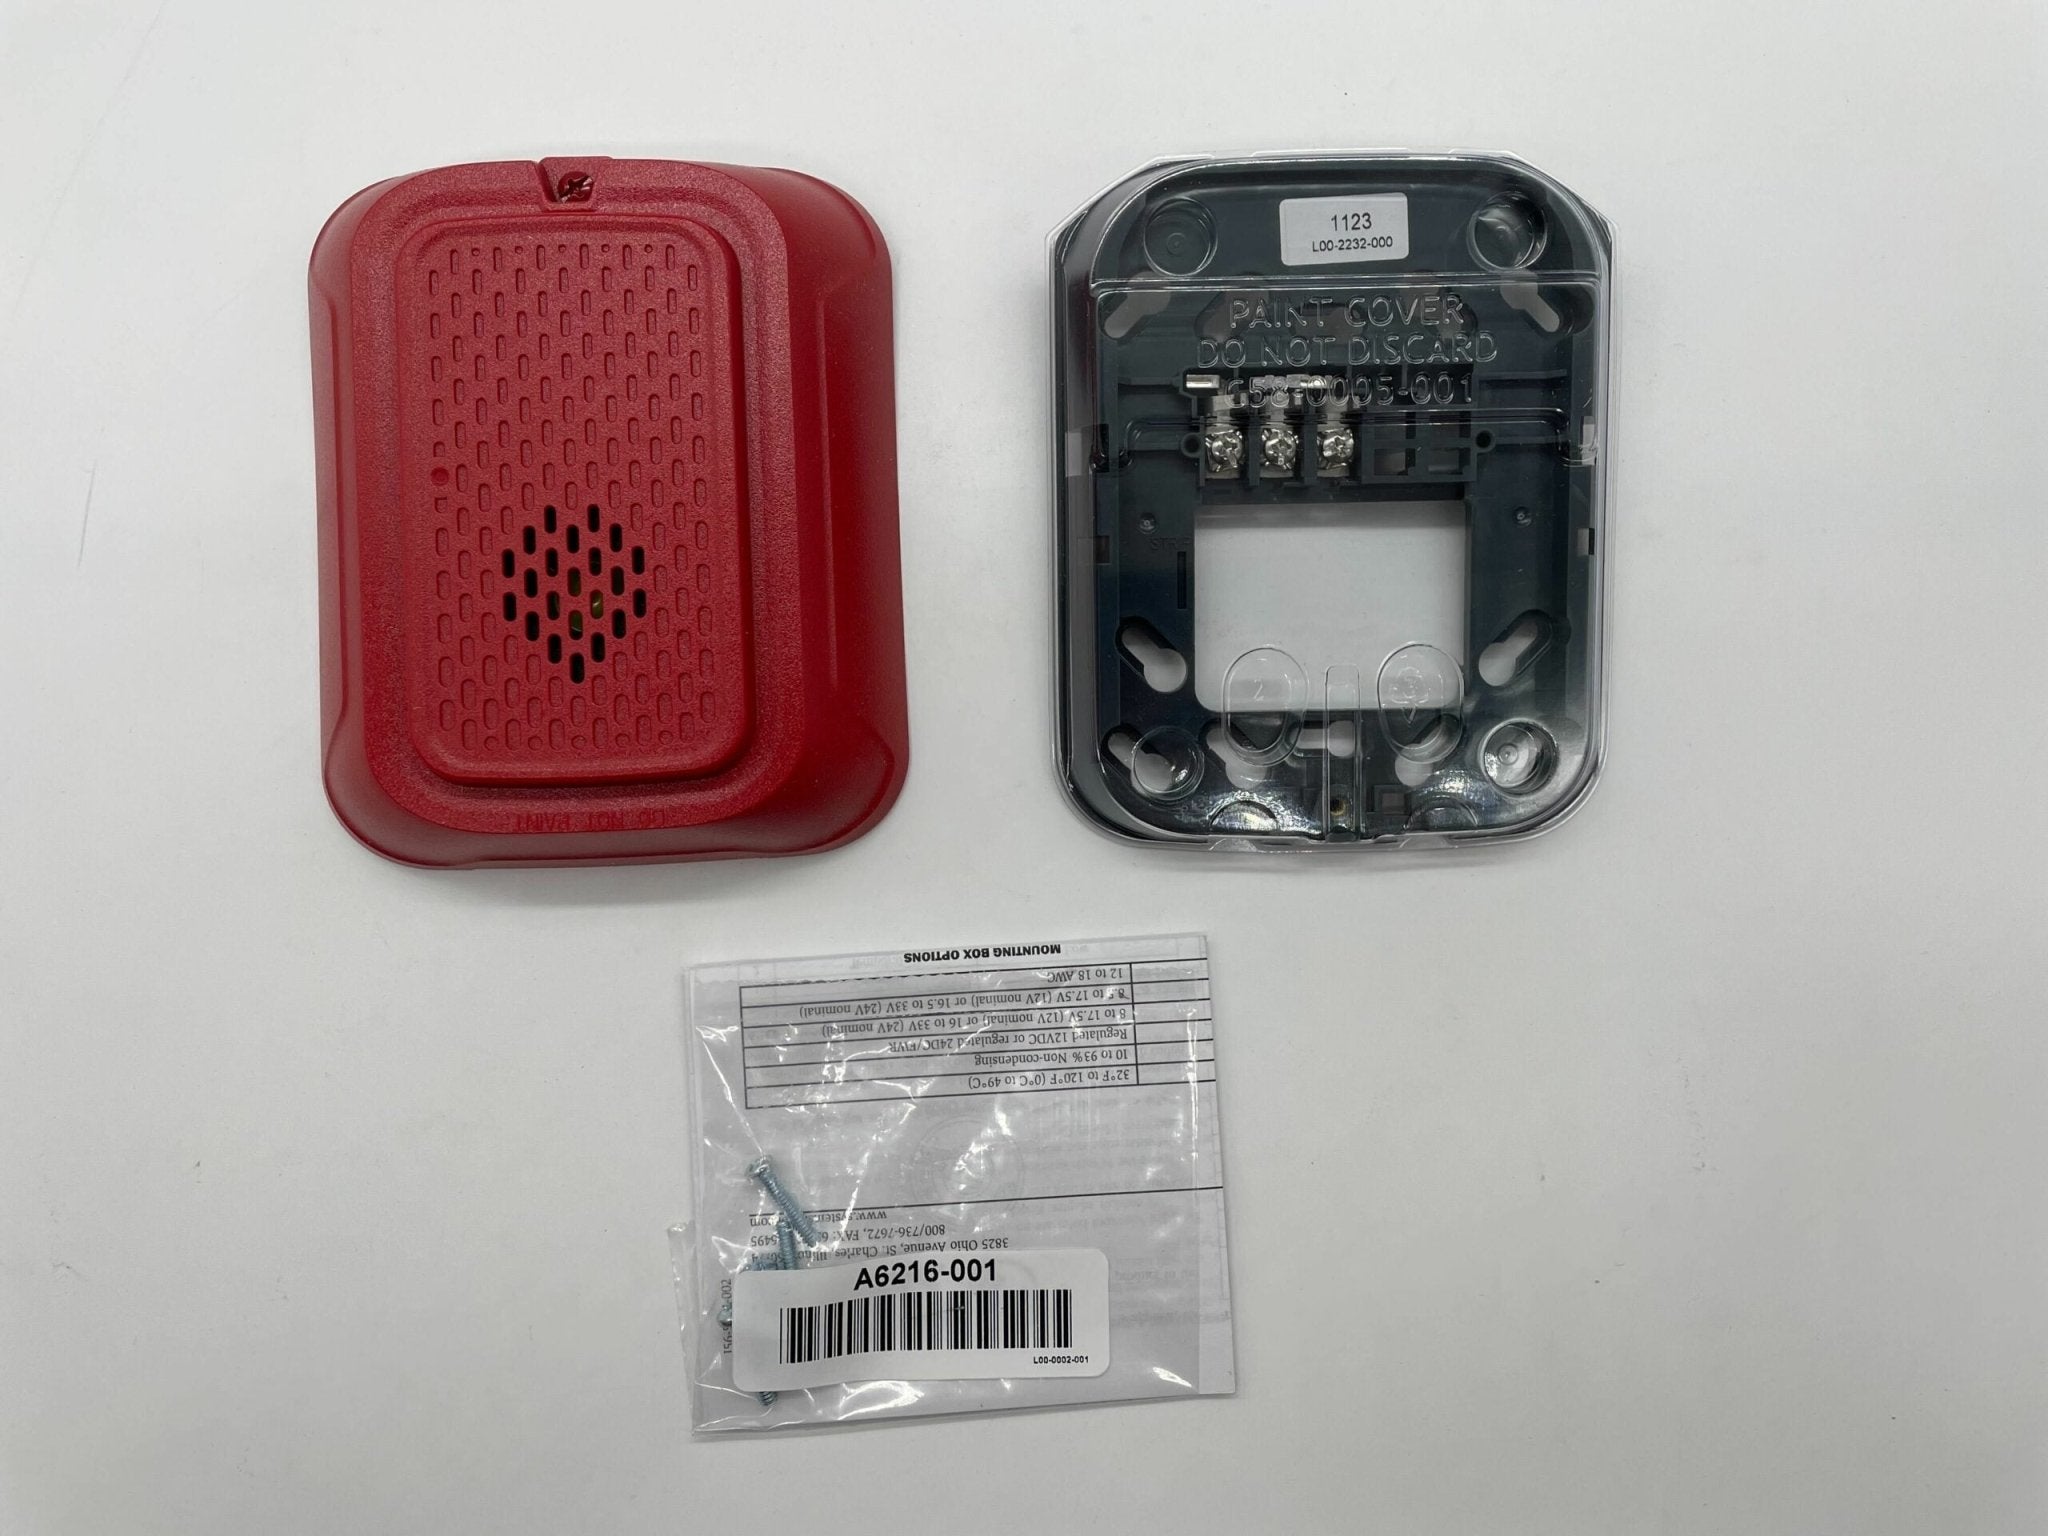 System Sensor HRL - The Fire Alarm Supplier